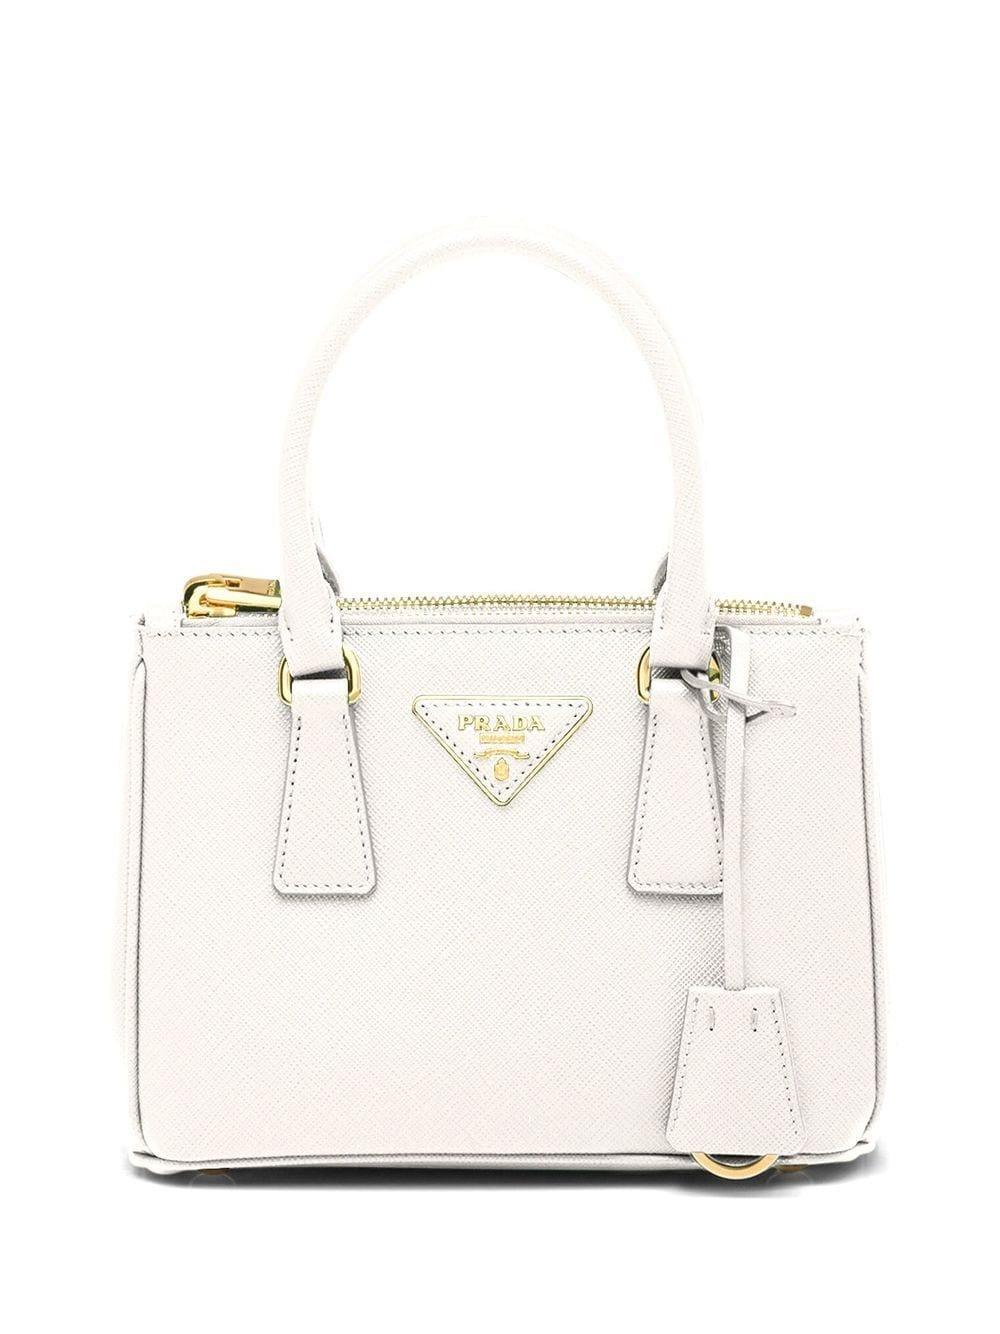 Prada Galleria Saffiano Leather Mini-bag in White | Lyst